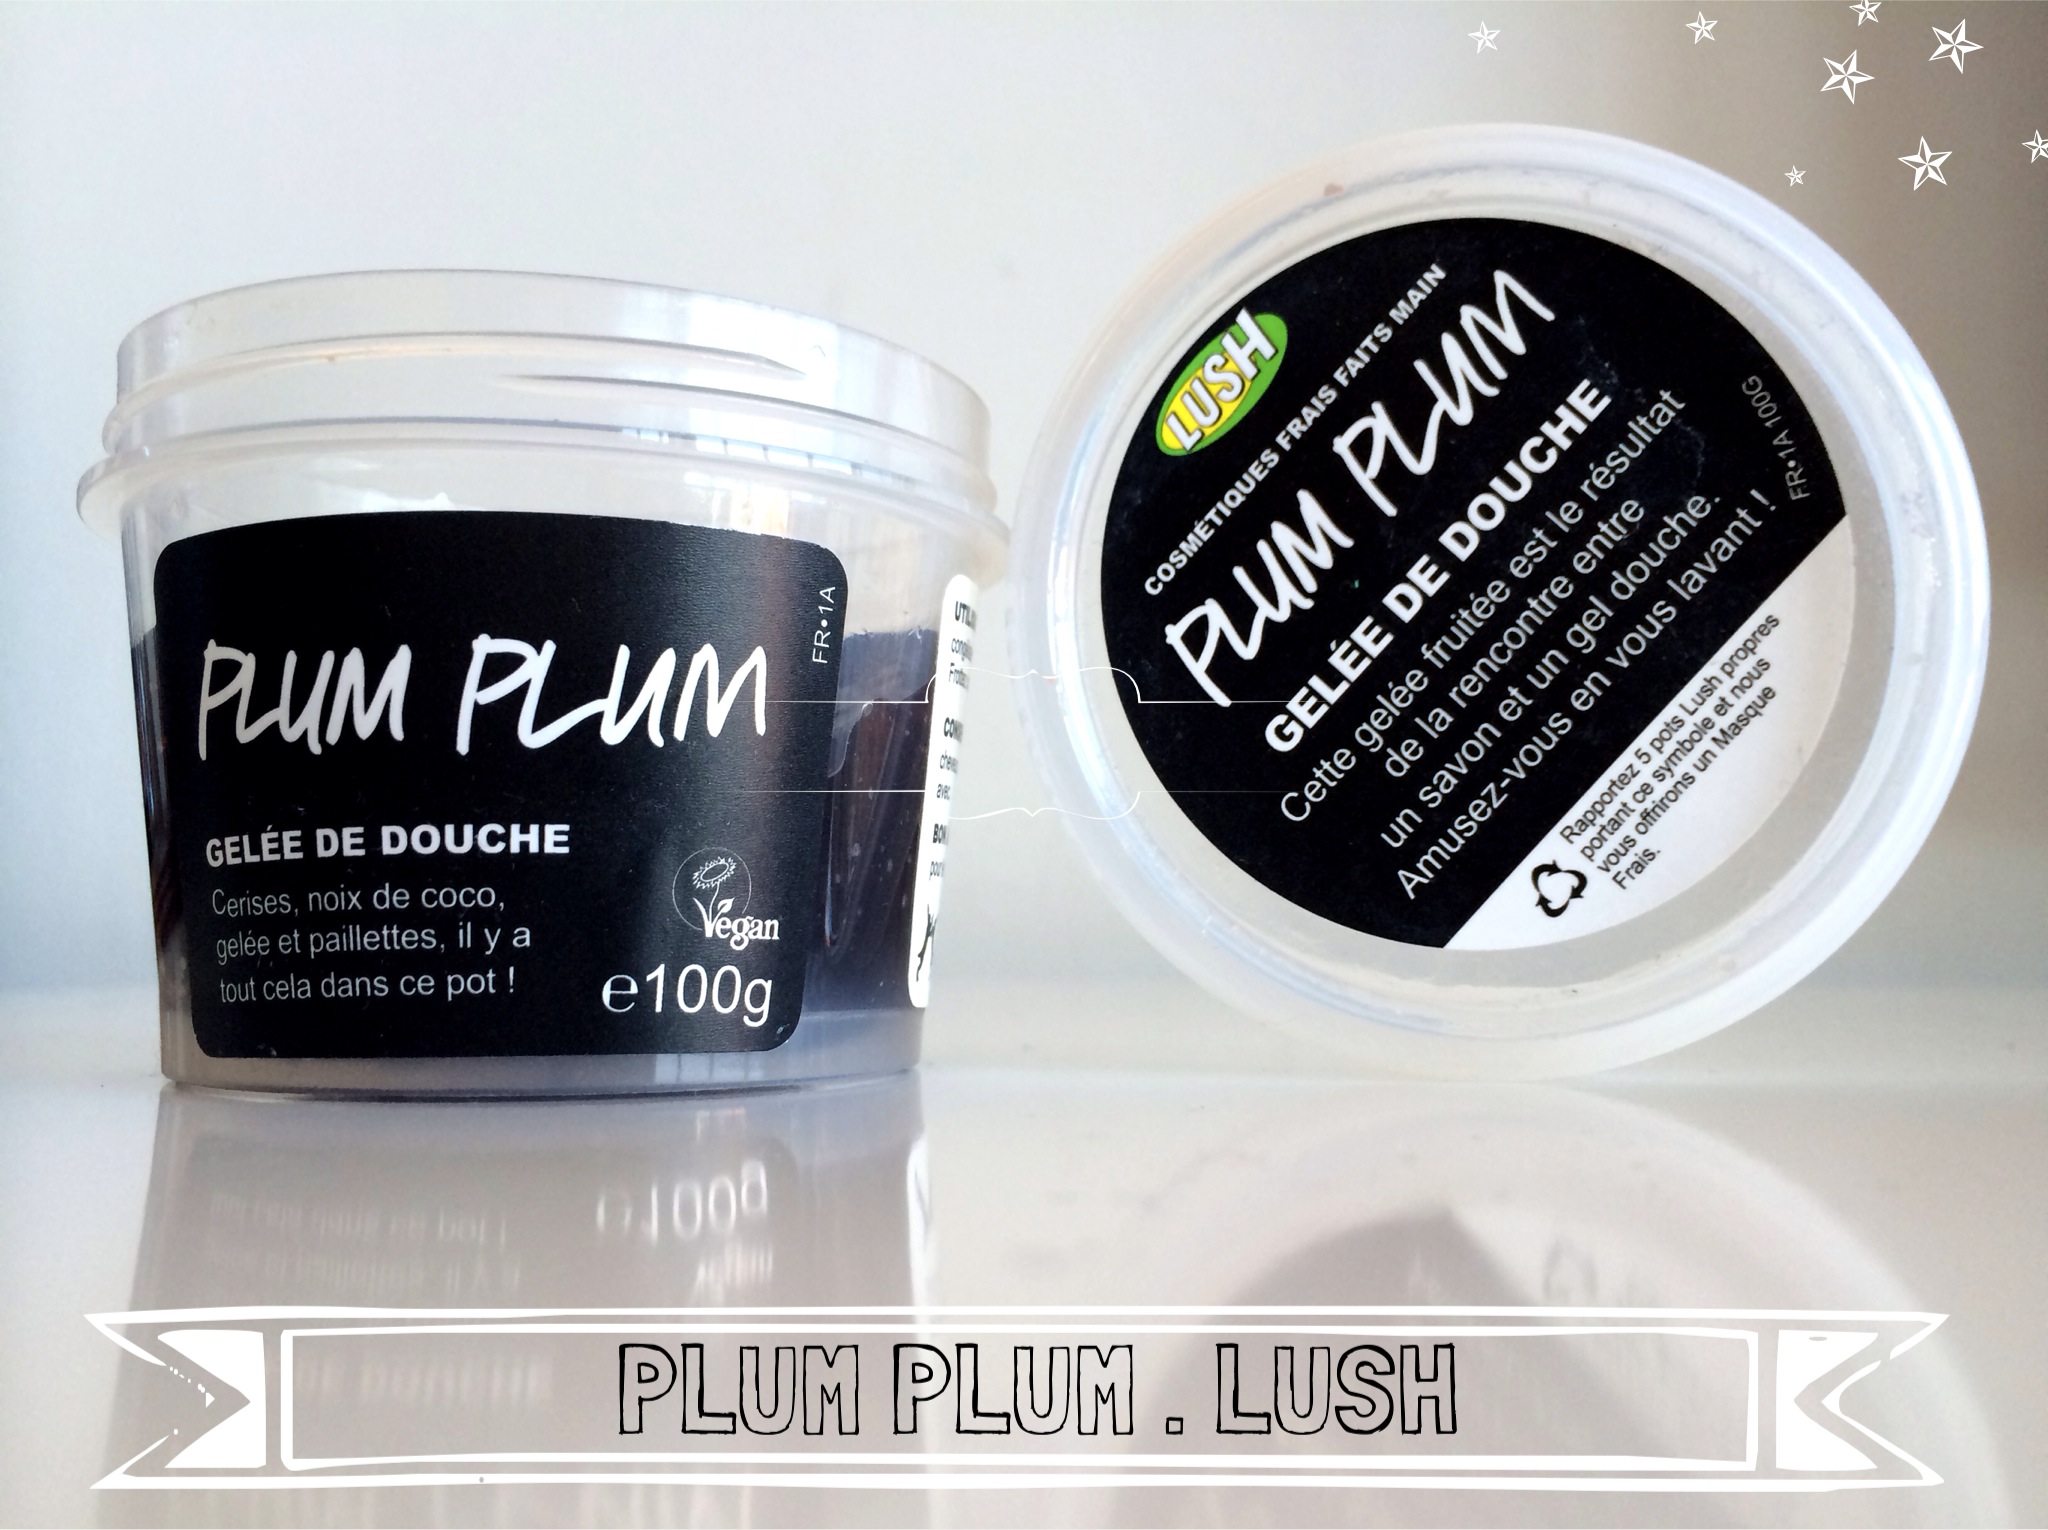 Plum plum - Lush